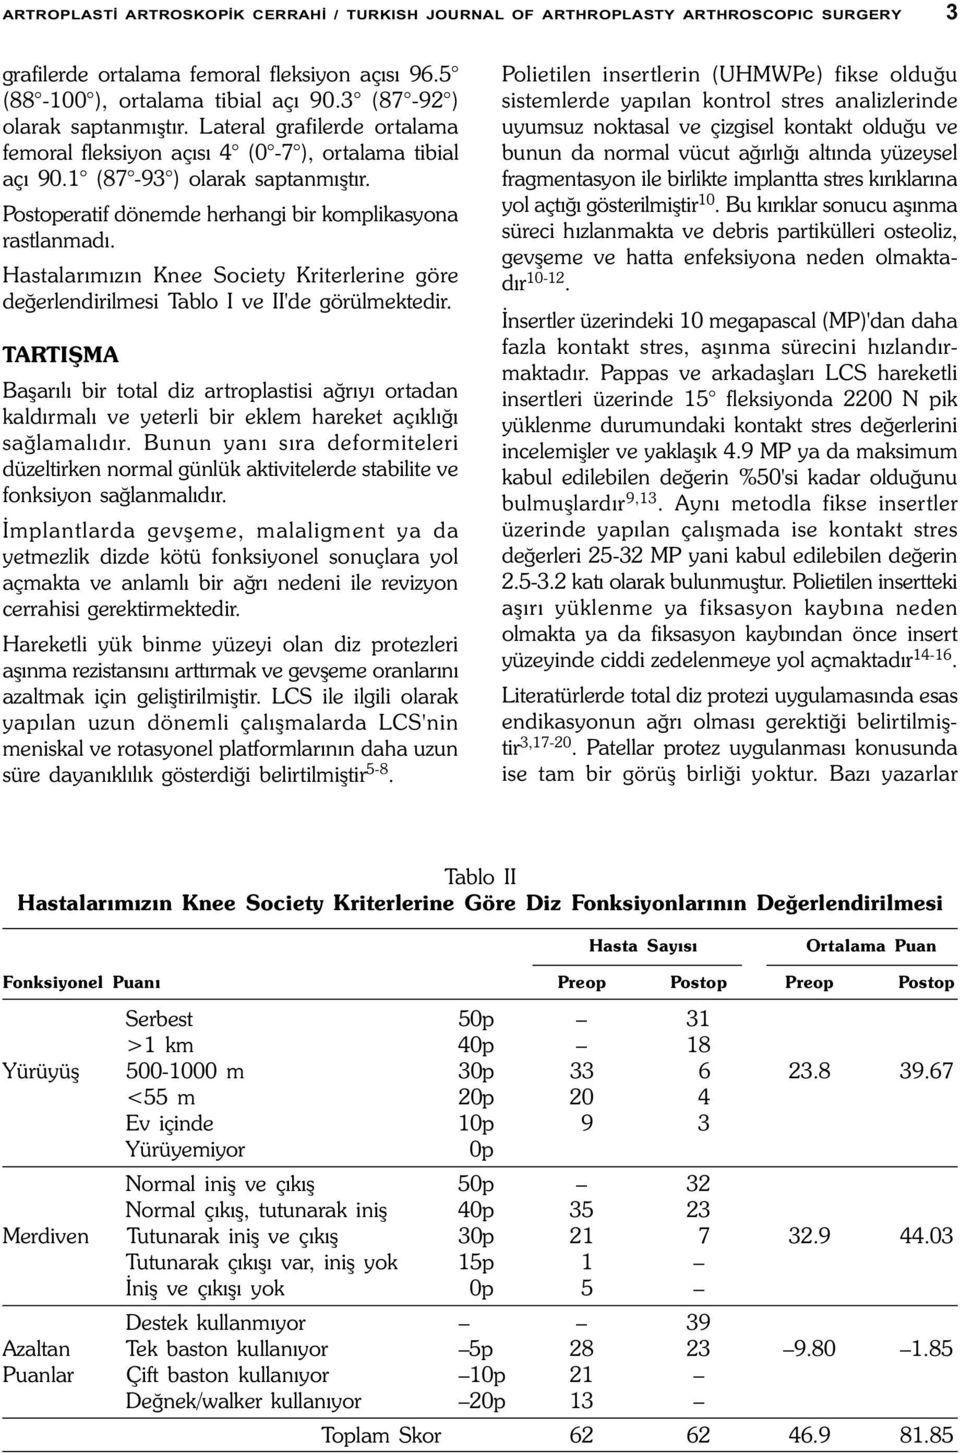 Postoperatif dönemde herhangi bir komplikasyona rastlanmadý. Hastalarýmýzýn Knee Society Kriterlerine göre deðerlendirilmesi Tablo I ve II'de görülmektedir.